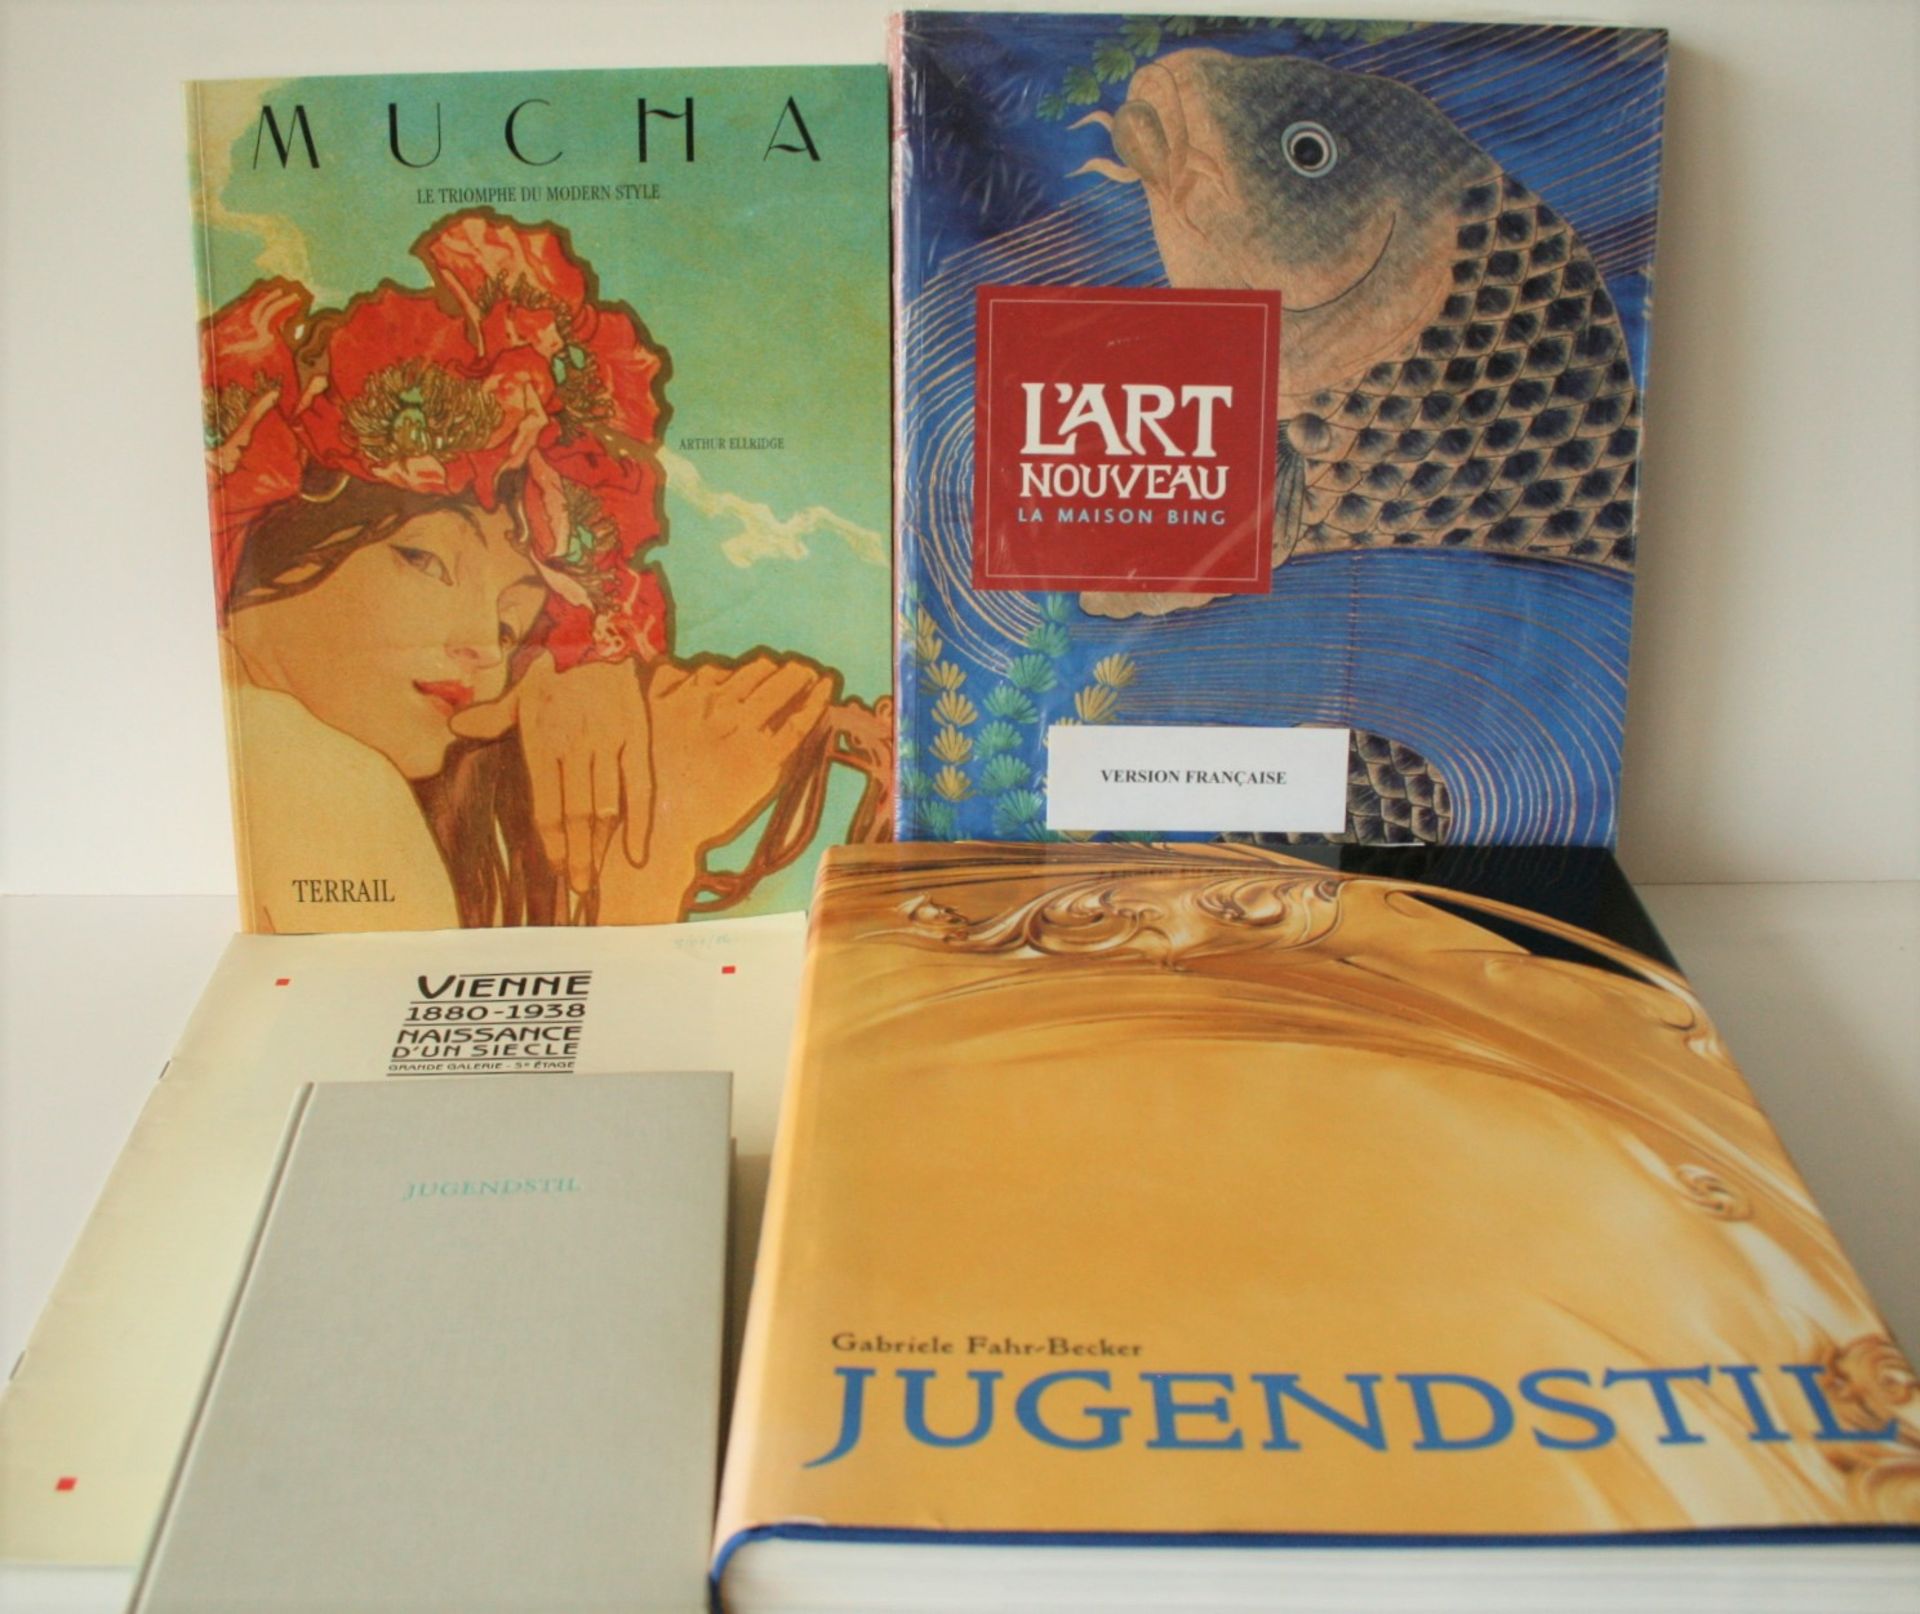 1. Jost HERMAND : Jugenstil, 1971, 2. L'Art Nouveau La maison Bing, 2006, 3. Arthur [...]